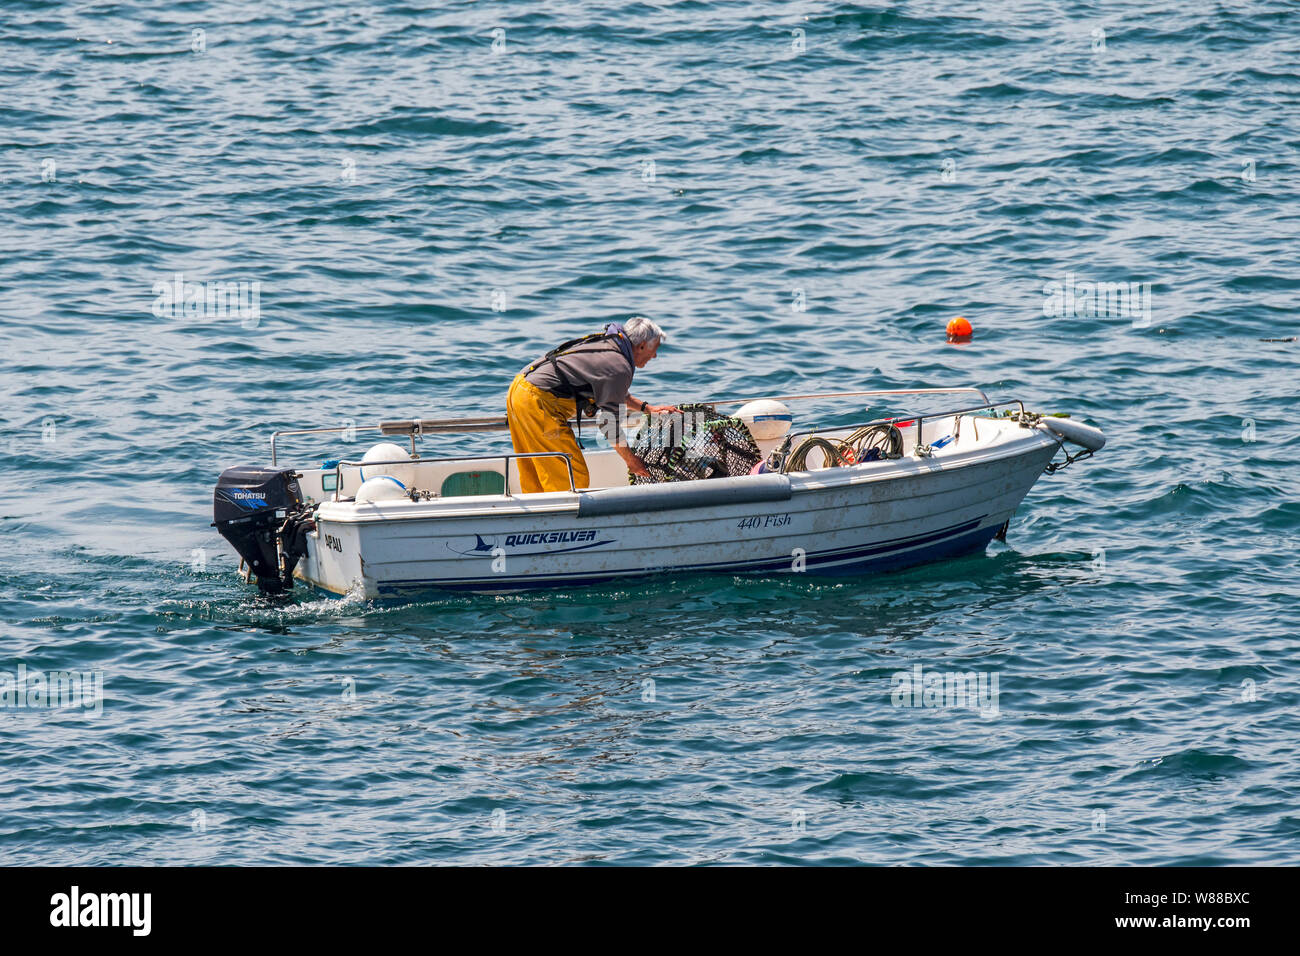 Pescatore in piccola barca da pesca la caduta / tiro trap aragosta / Lobster Pot / aragosta cantre nell'Oceano Atlantico / Canale Inglese Foto Stock